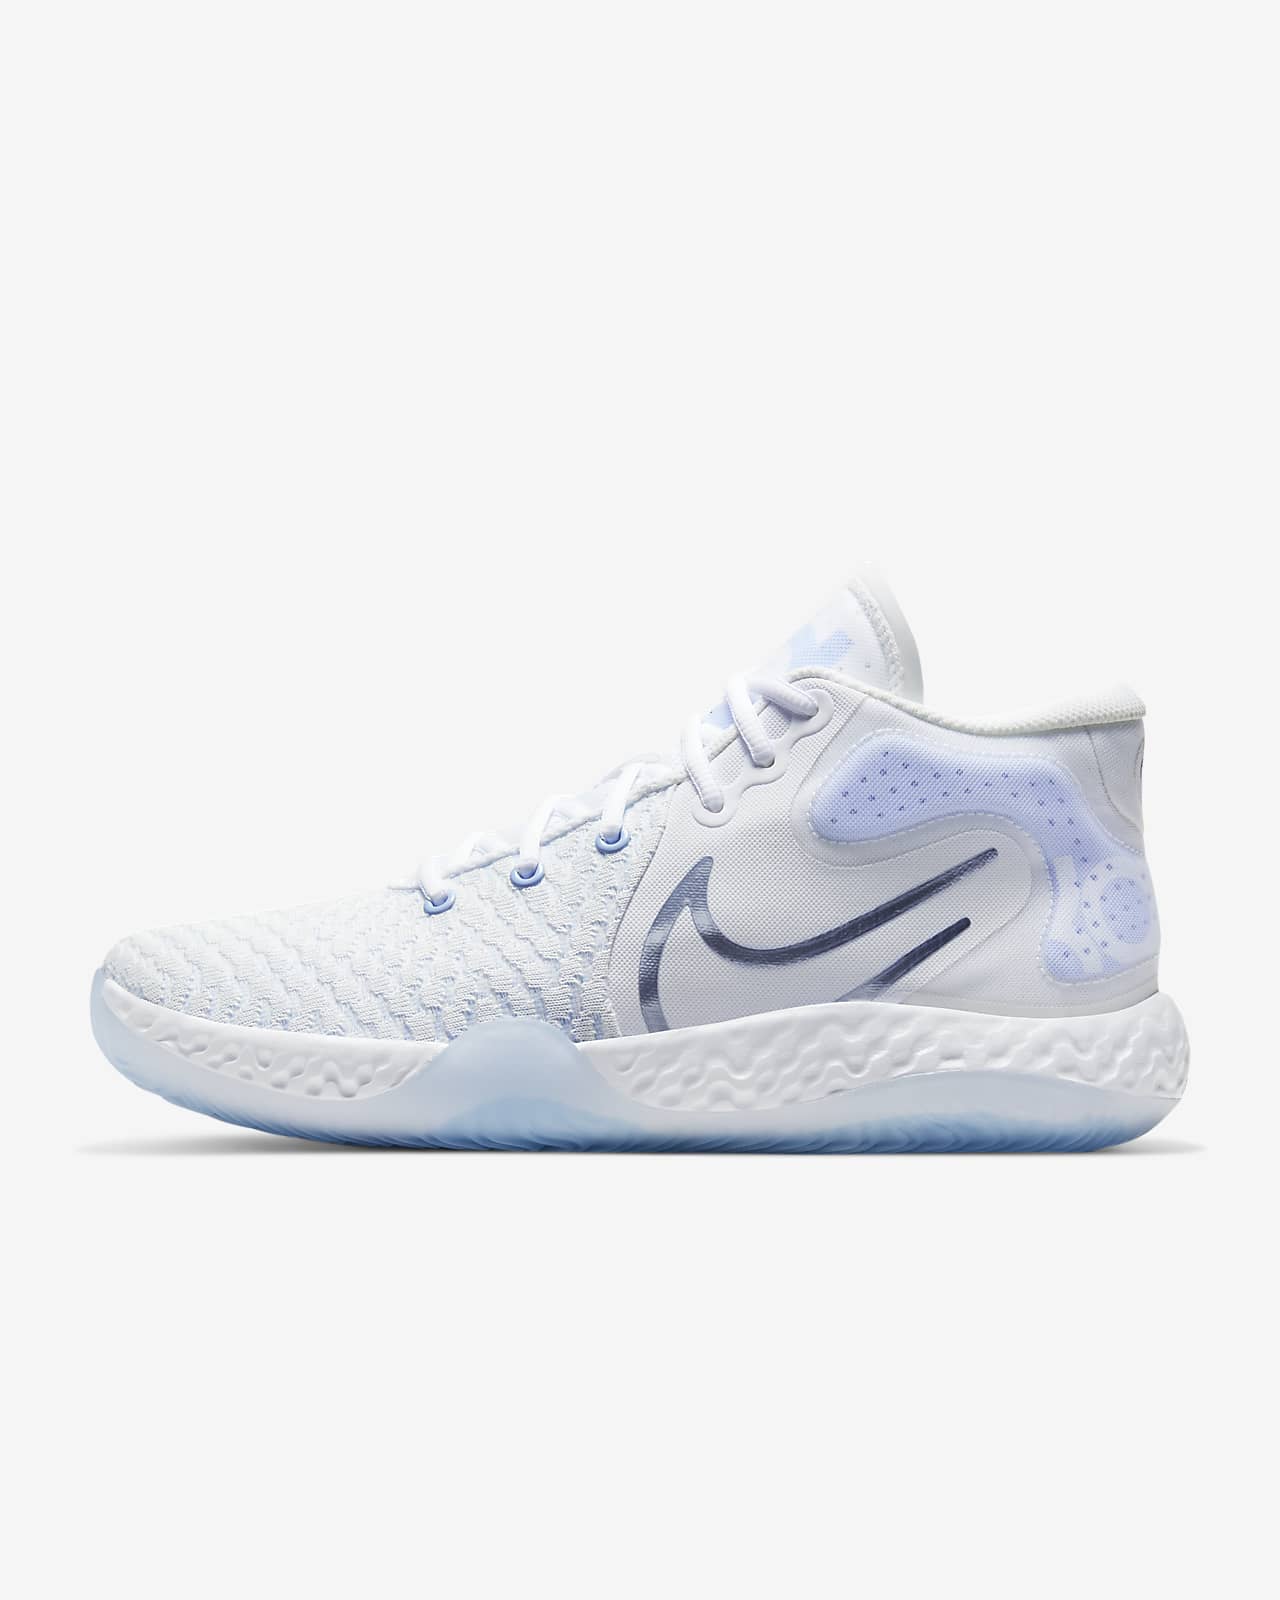 KD Trey 5 VIII Basketball Shoes. Nike.com